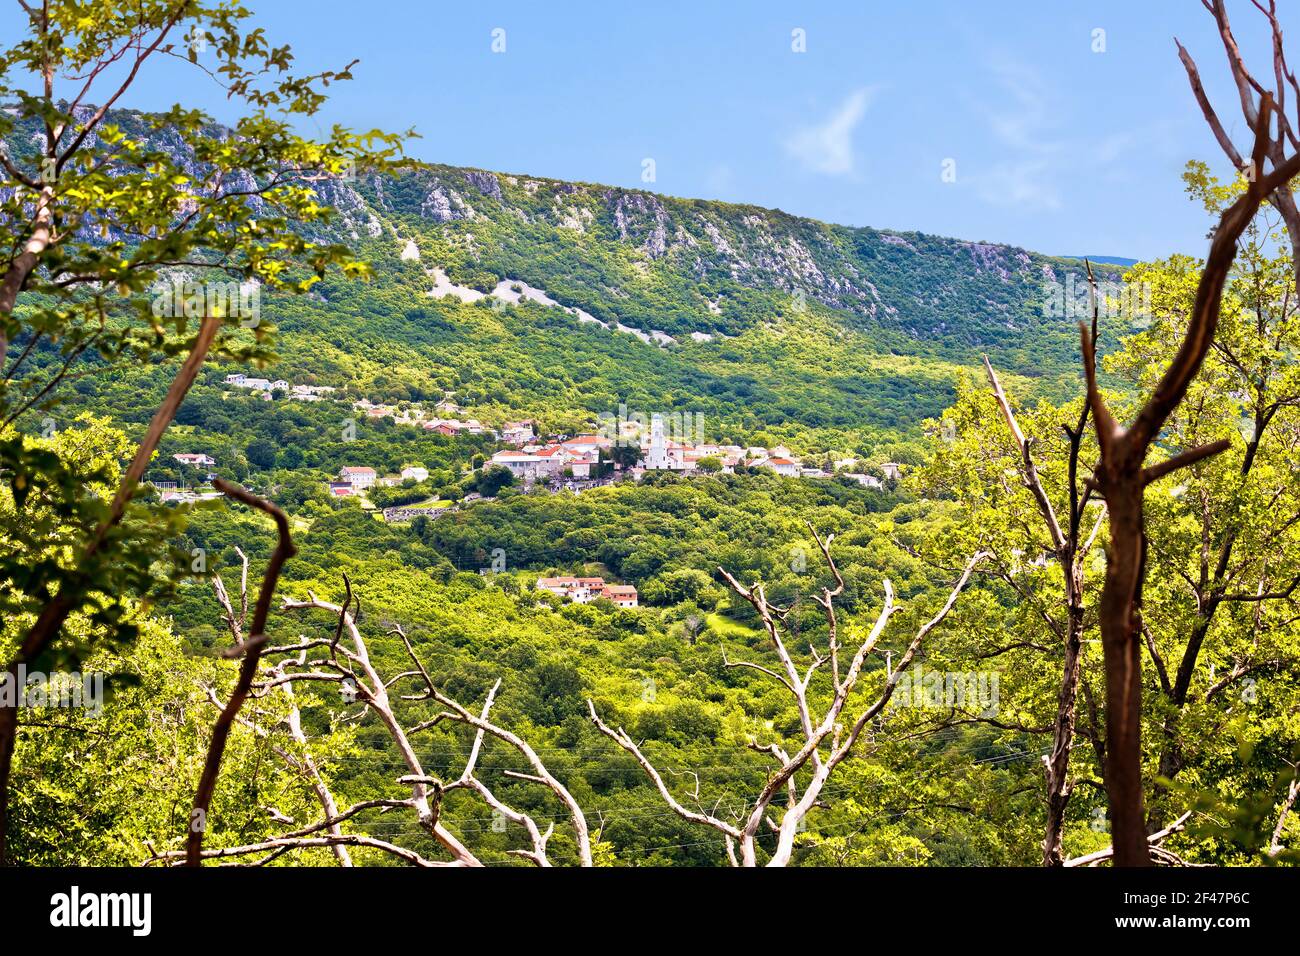 Historic town of Bribir in Vinodol valley view, Kvarner region of Croatia Stock Photo